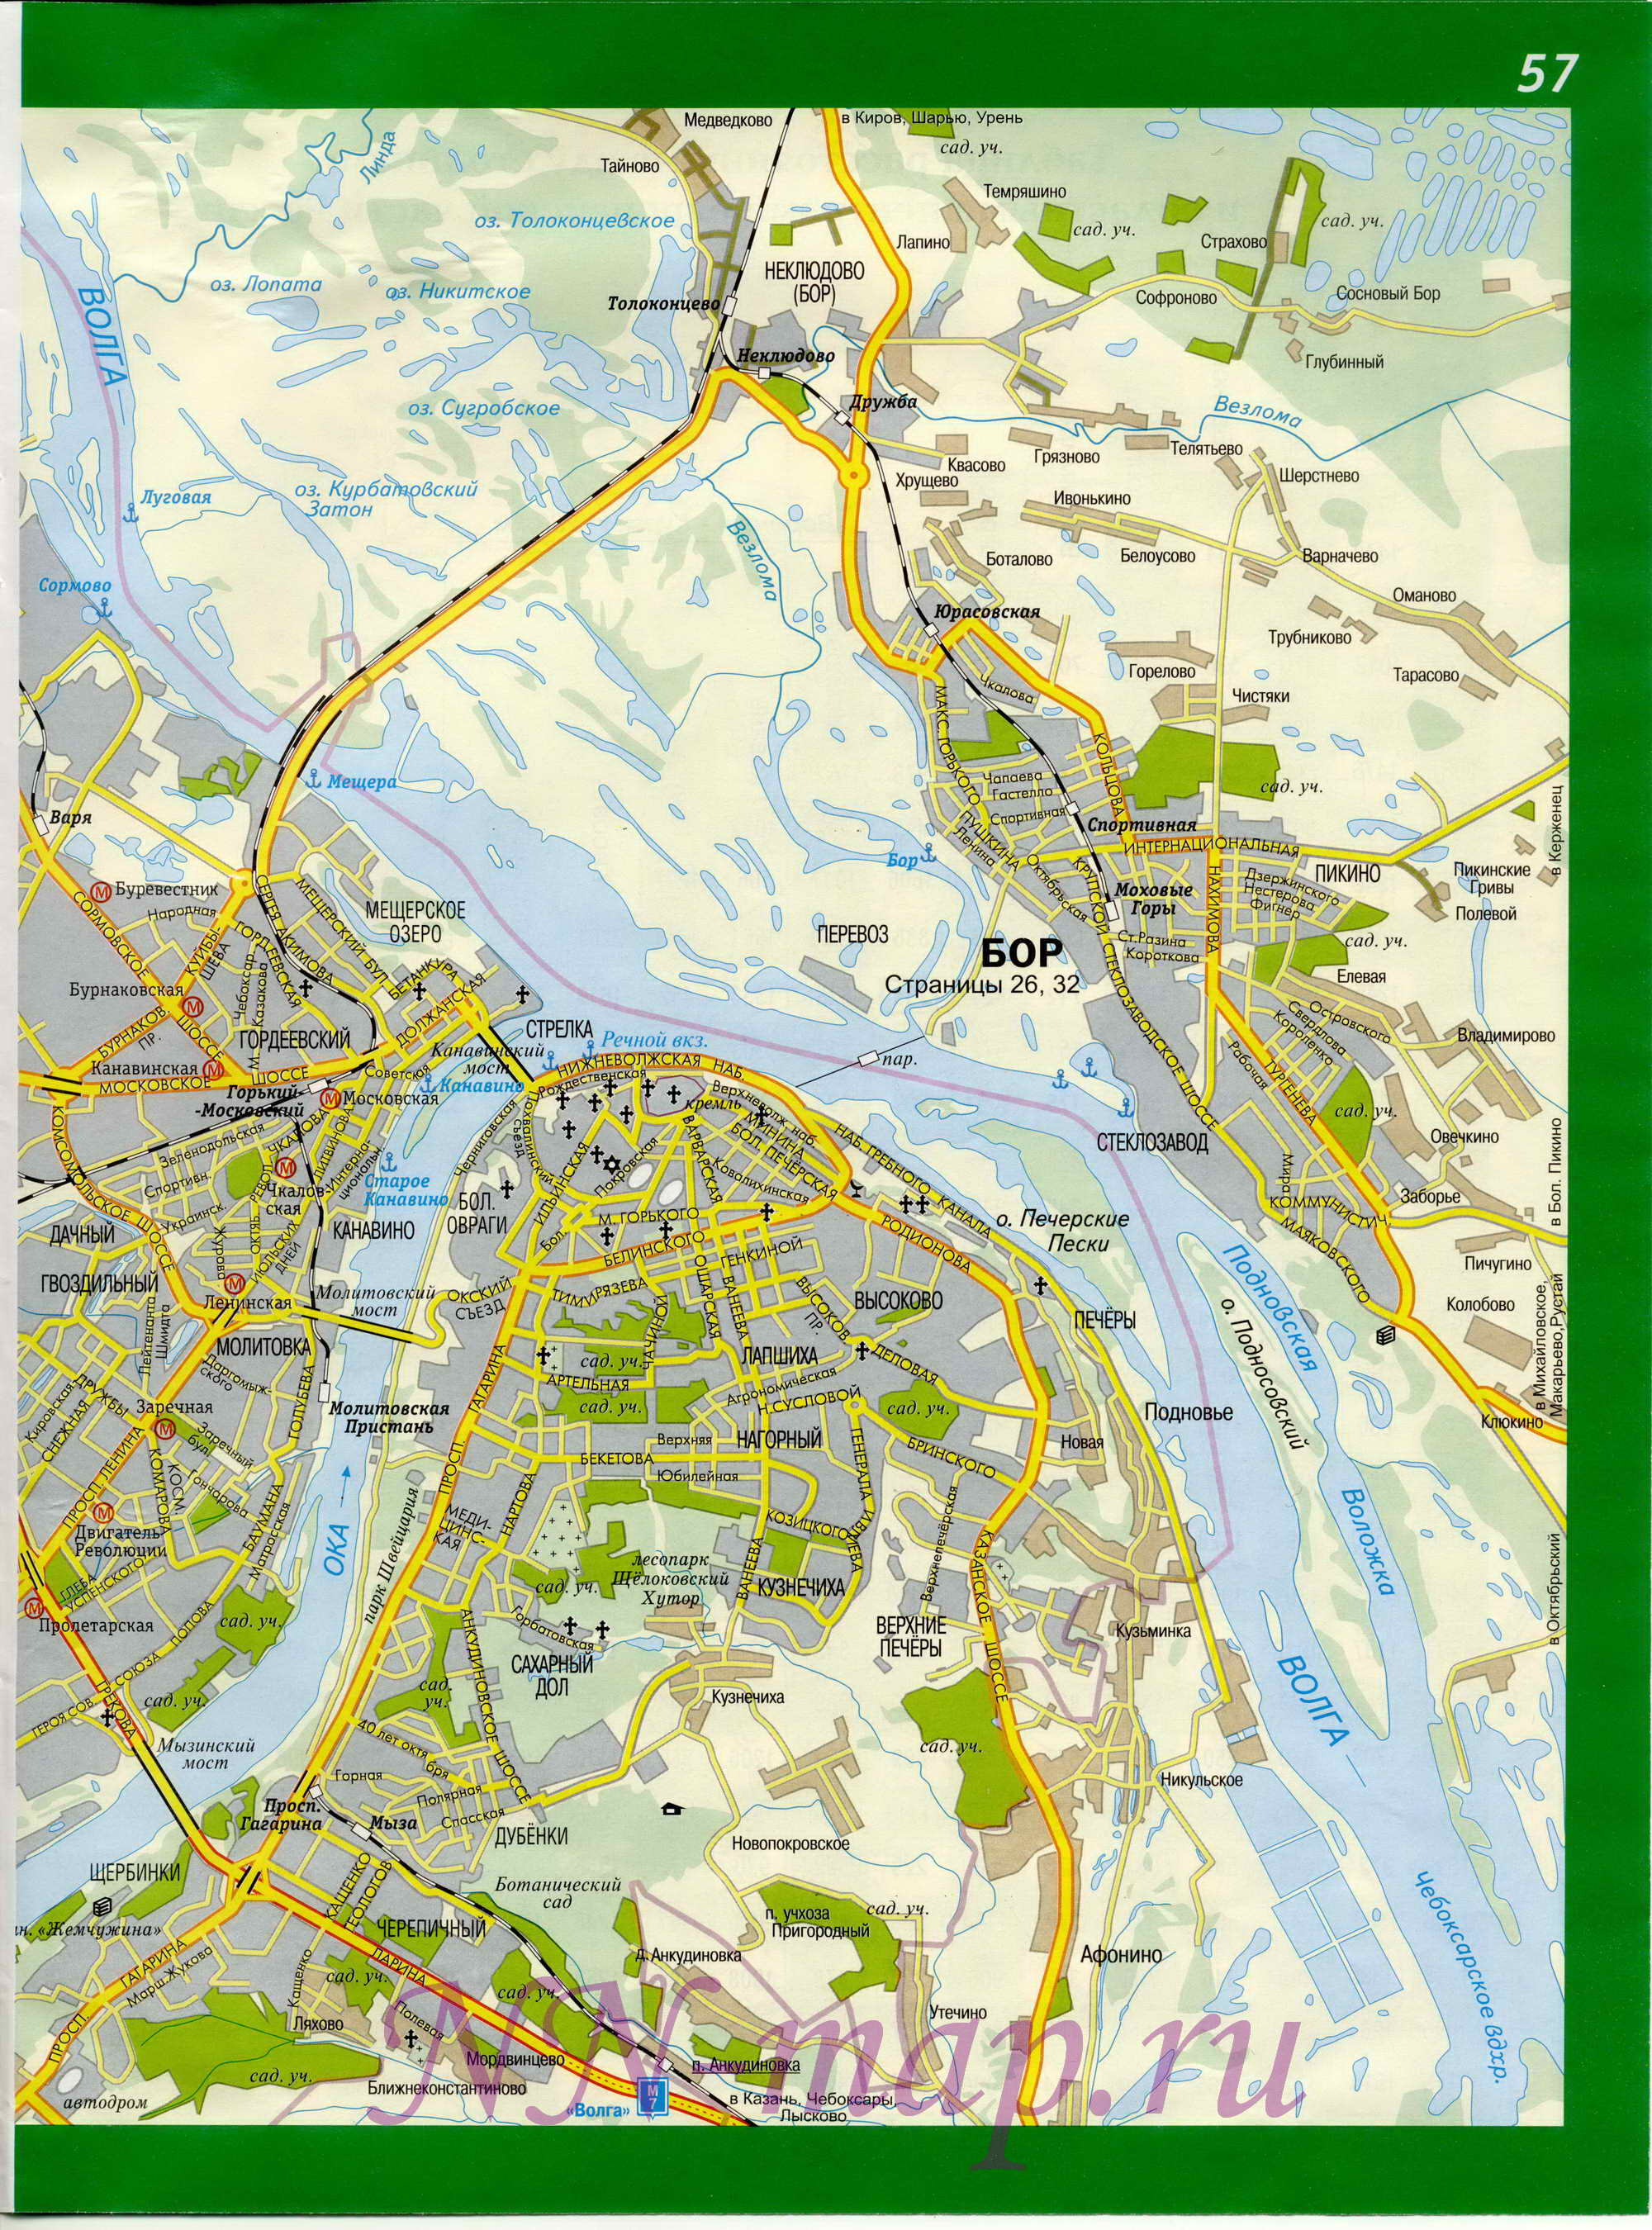  Карта Нижнего Новгорода. Карта улиц города Нижний Новгород. Схема проезда через Нижний Новгород, B0 - 